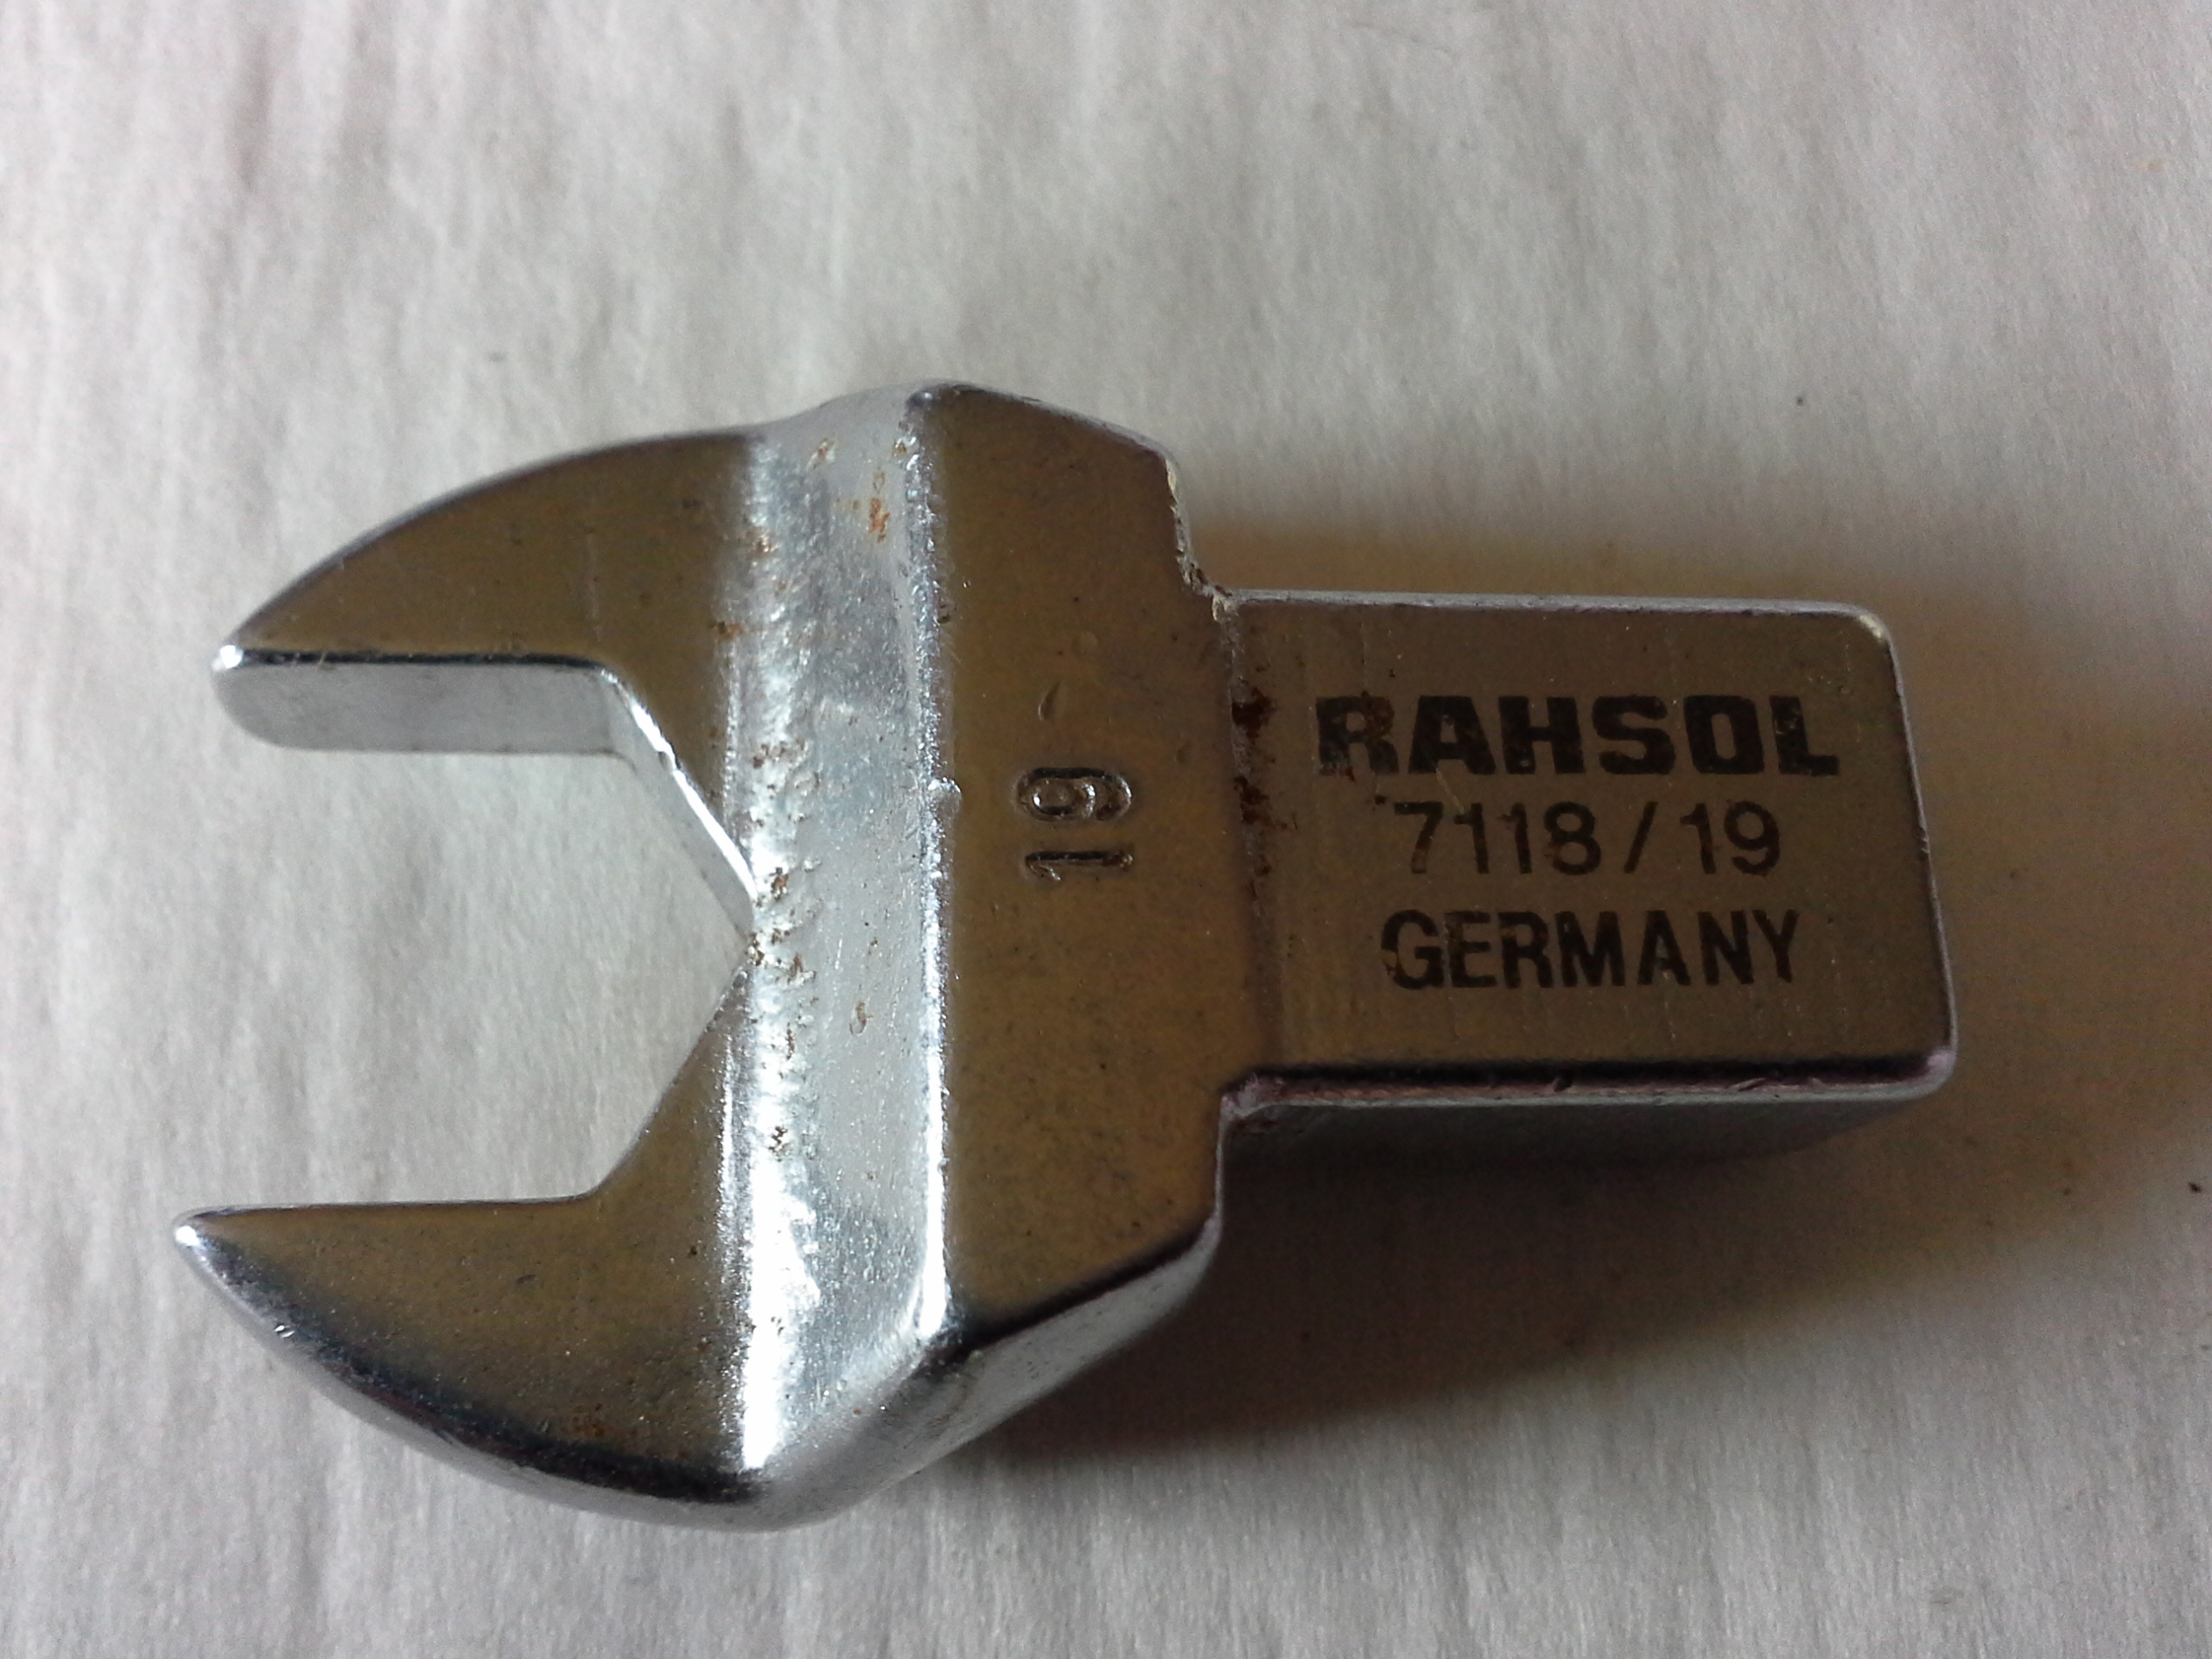 Rahsol 7118/19 Einsteck Gabelschlüssel SW 19